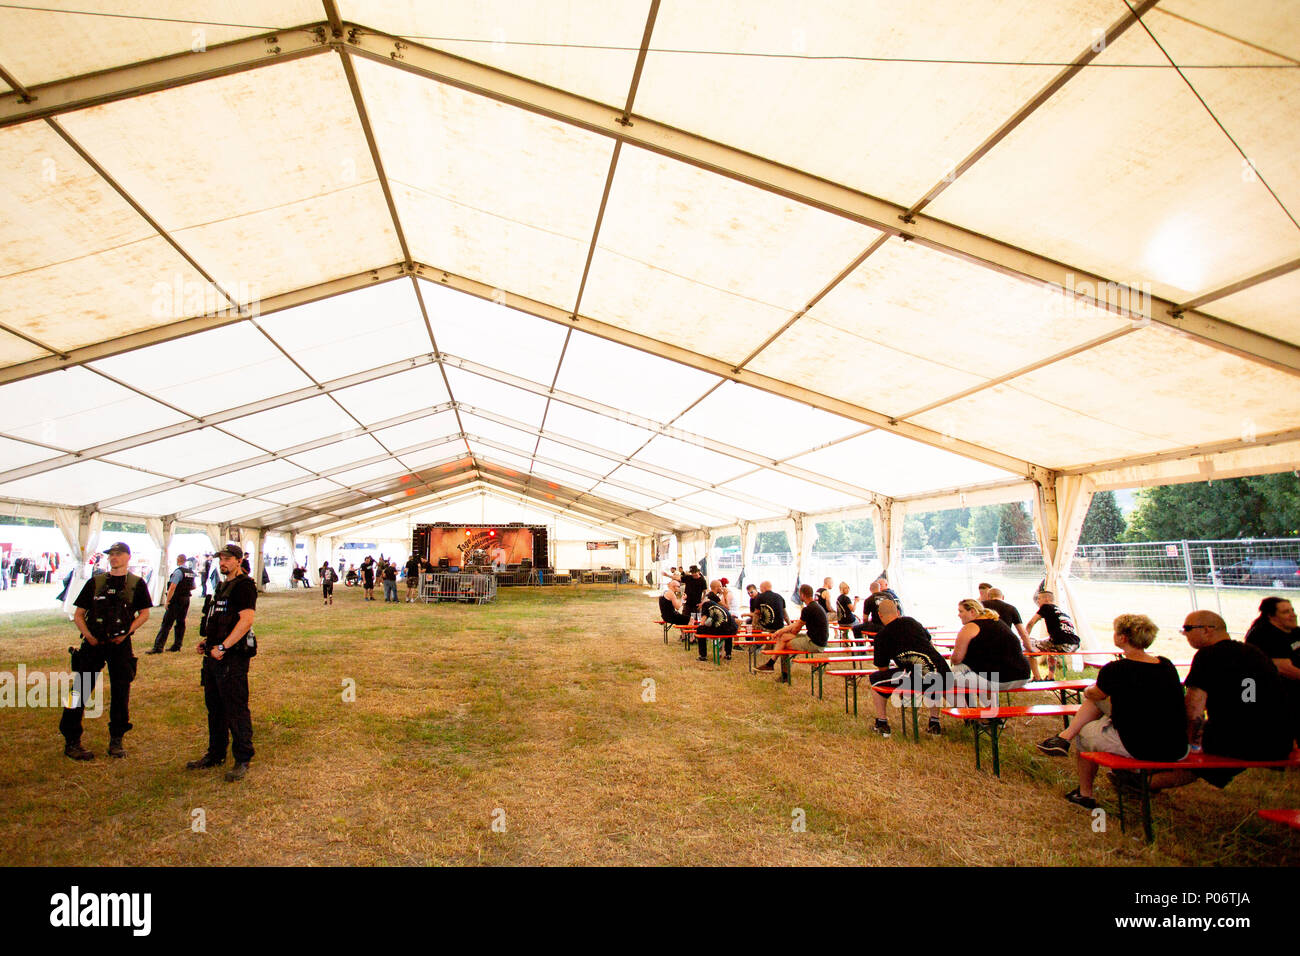 08 juin 2018, l'Allemagne, l'Themar : personnes dans une tente au festival 'Tage der Bewegung l'. Les 2 jours du festival attire des gens de droite de toute l'Europe. Plusieurs contre-manifestations et événements sont prévus. Photo : -/dpa Banque D'Images